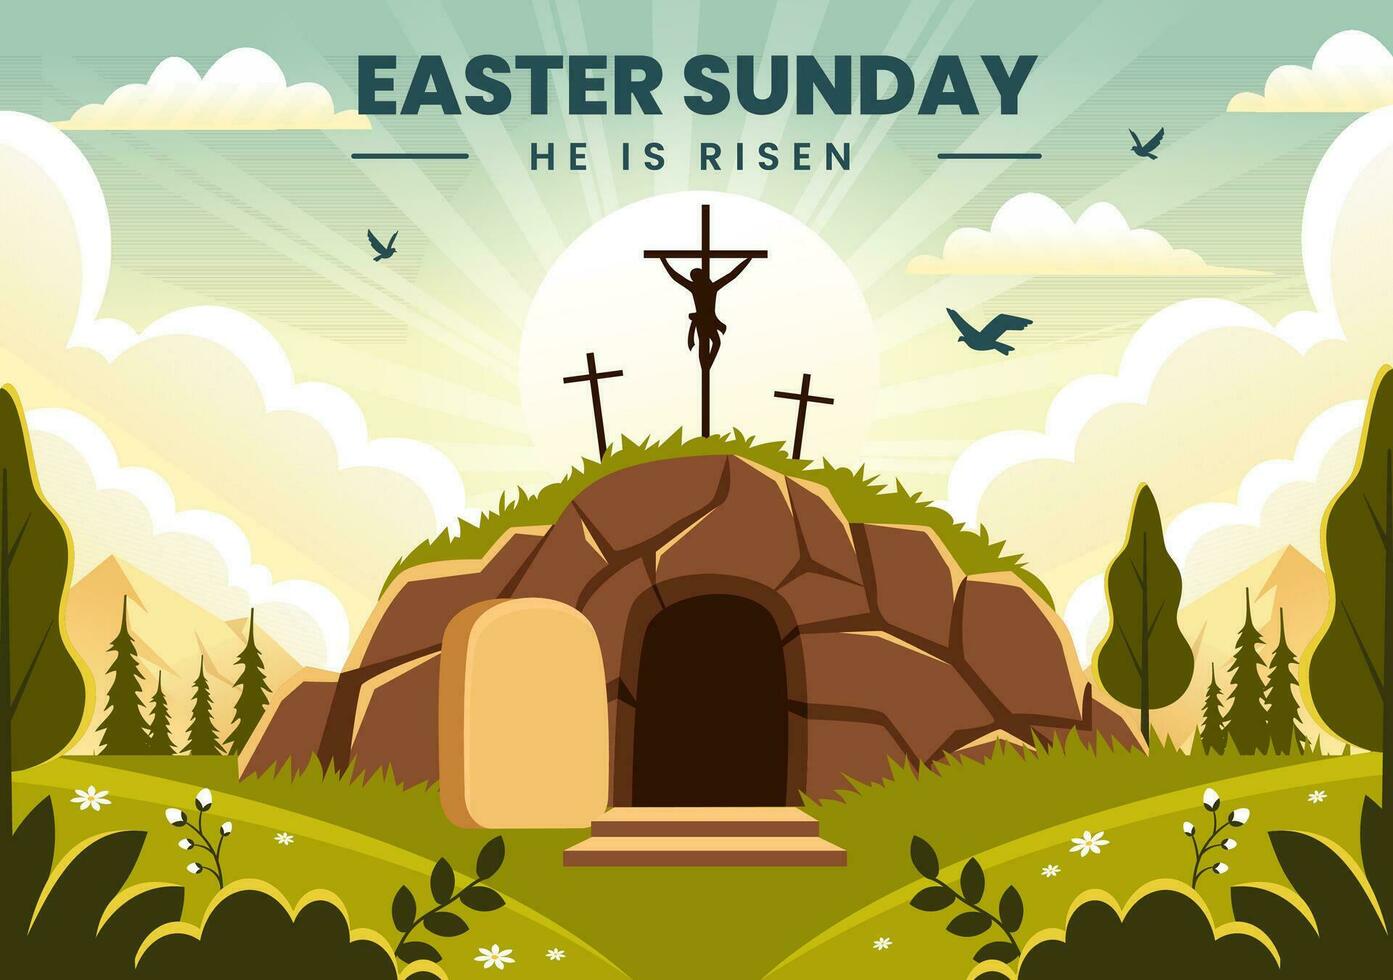 contento Pascua de Resurrección domingo vector ilustración de Jesús, él es resucitado y celebracion de Resurrección con cueva y el cruzar en plano dibujos animados antecedentes